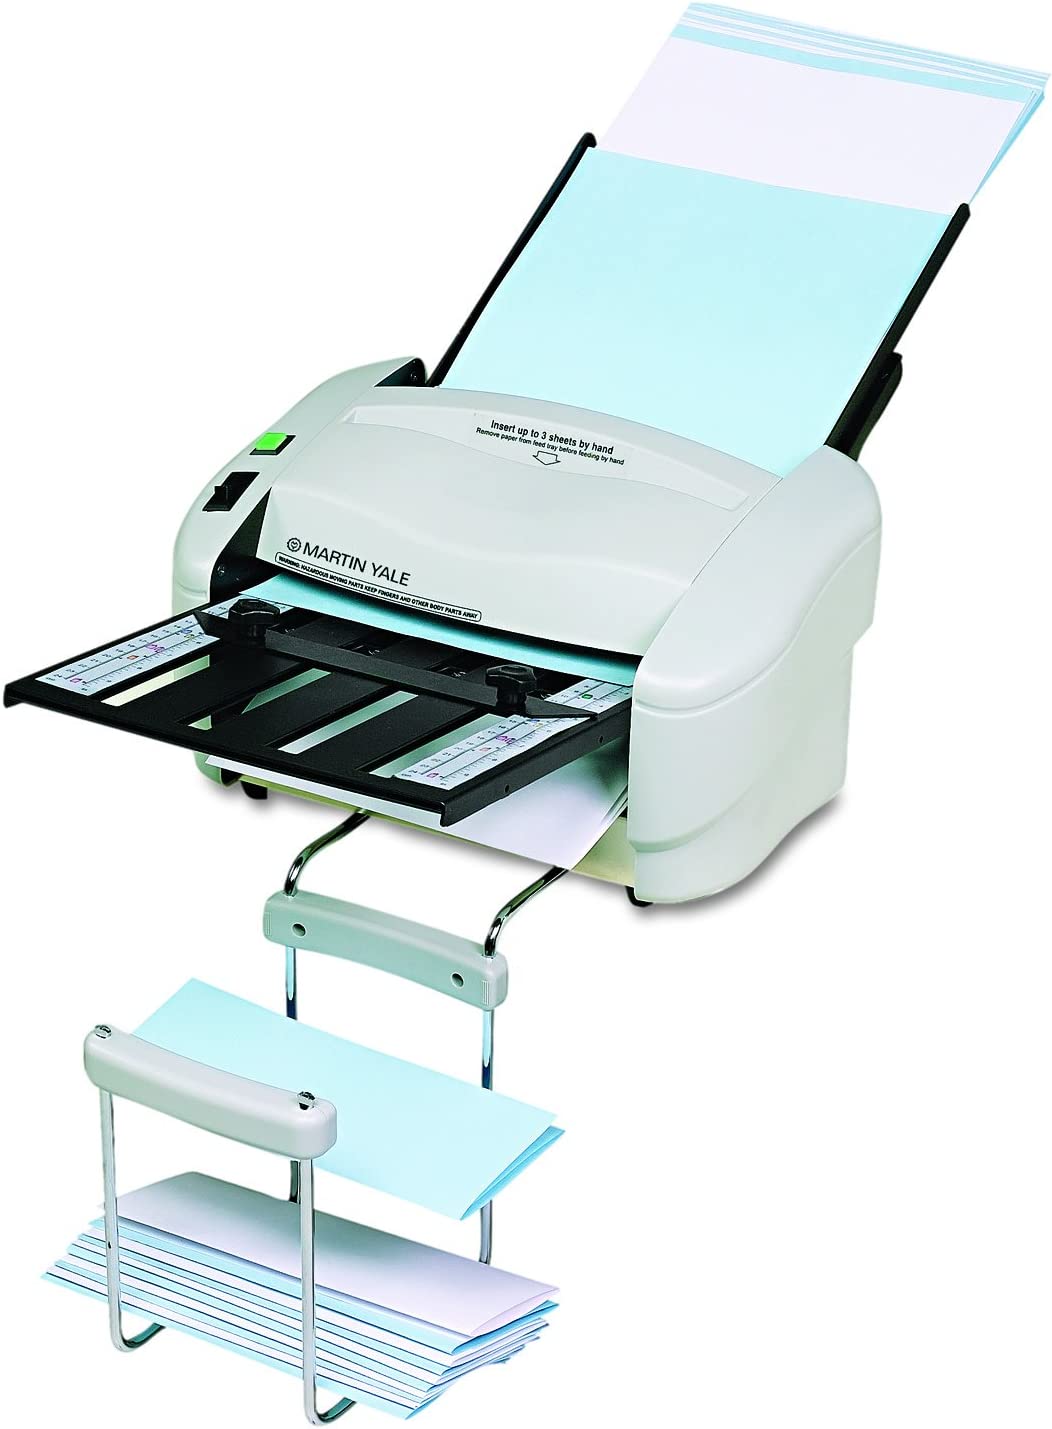 Martin Yale P7400 RapidFold Automatic Paper Folding Machine